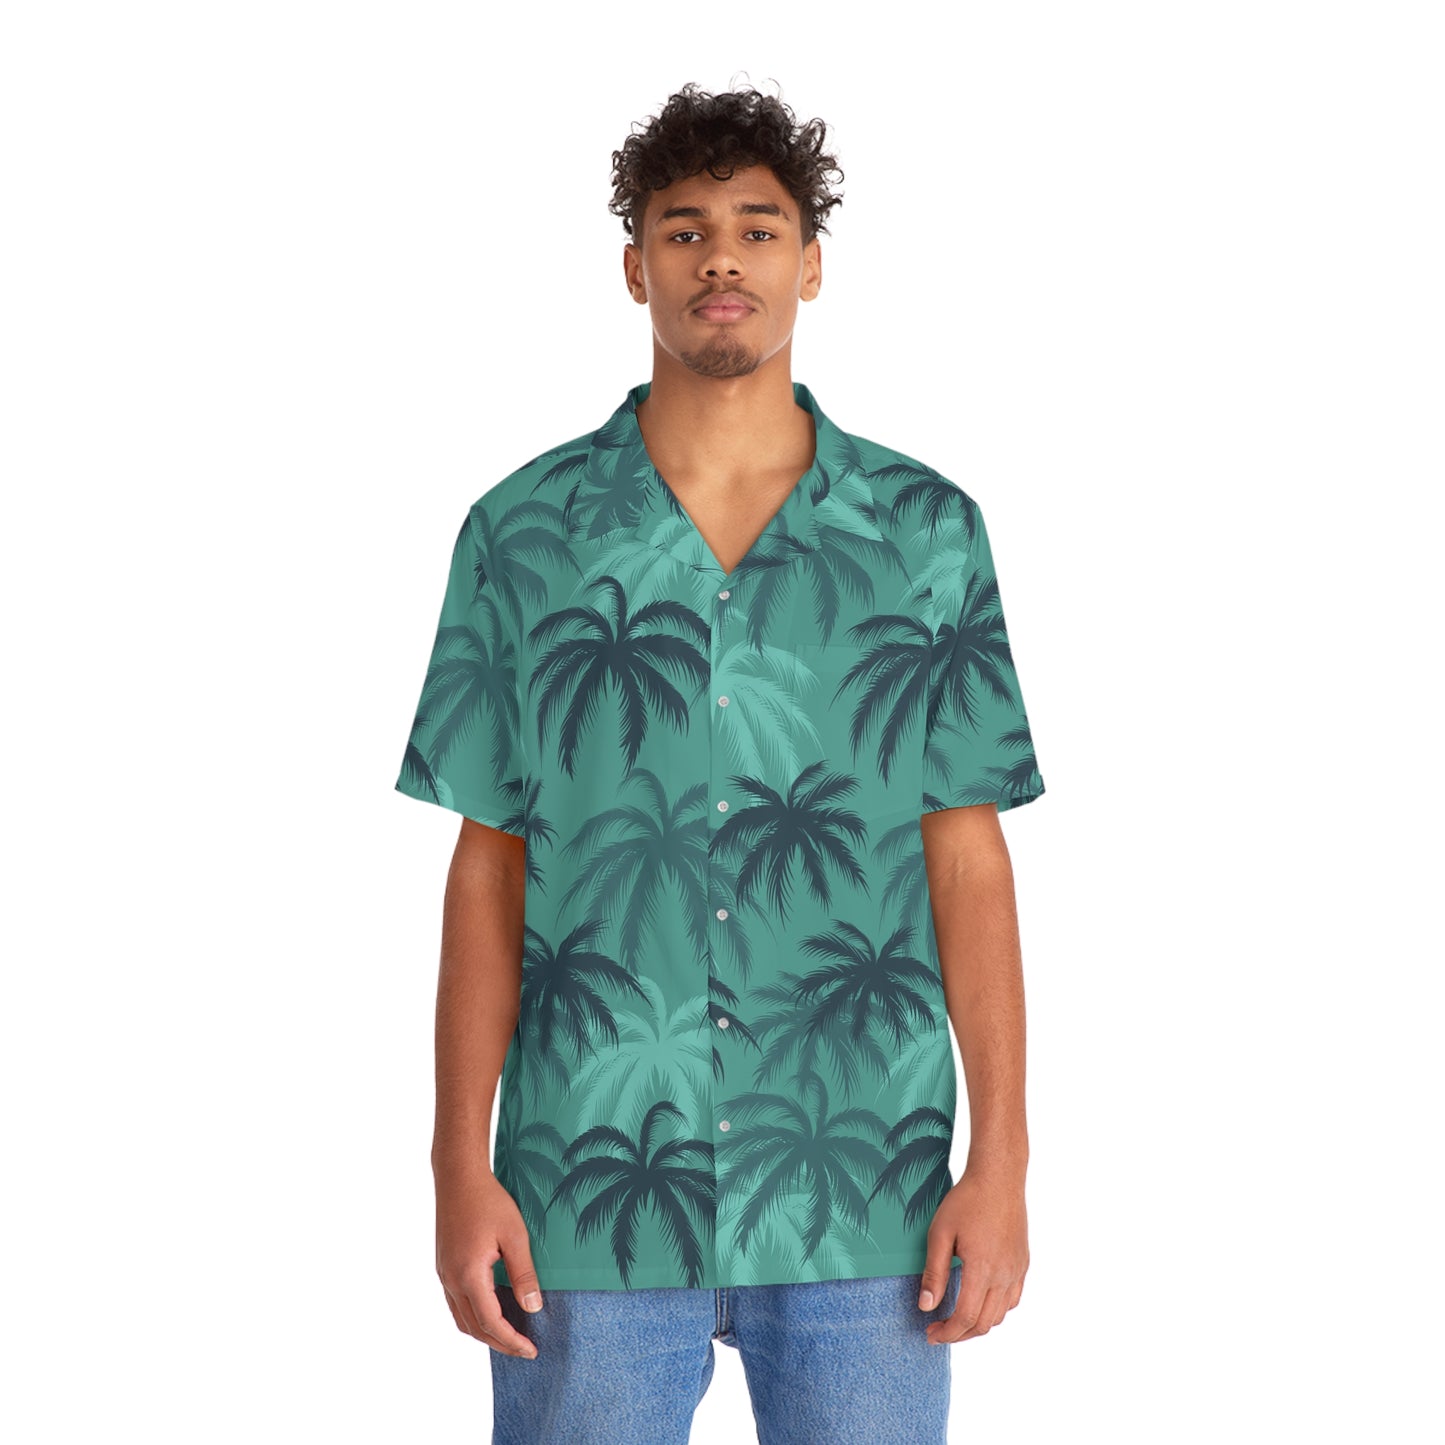 Tommy V HI RES "Hawaiian" shirt